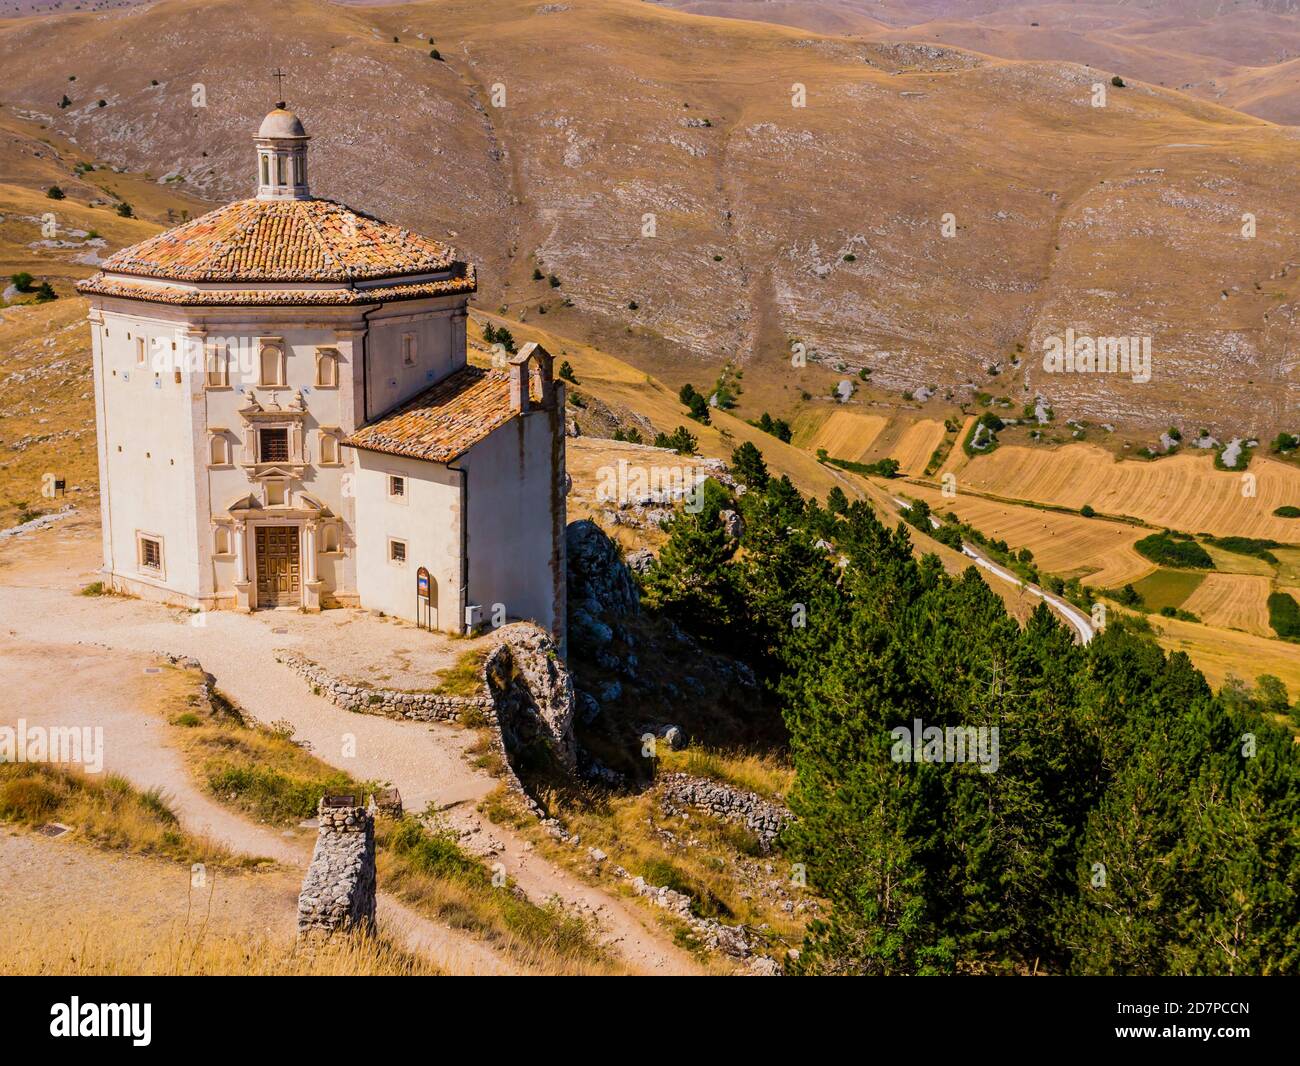 Eglise de Santa Maria della Pietà, un complexe religieux à côté des ruines de Rocca Calascio, Parc national de Gran Sasso, région des Abruzzes, Italie Banque D'Images